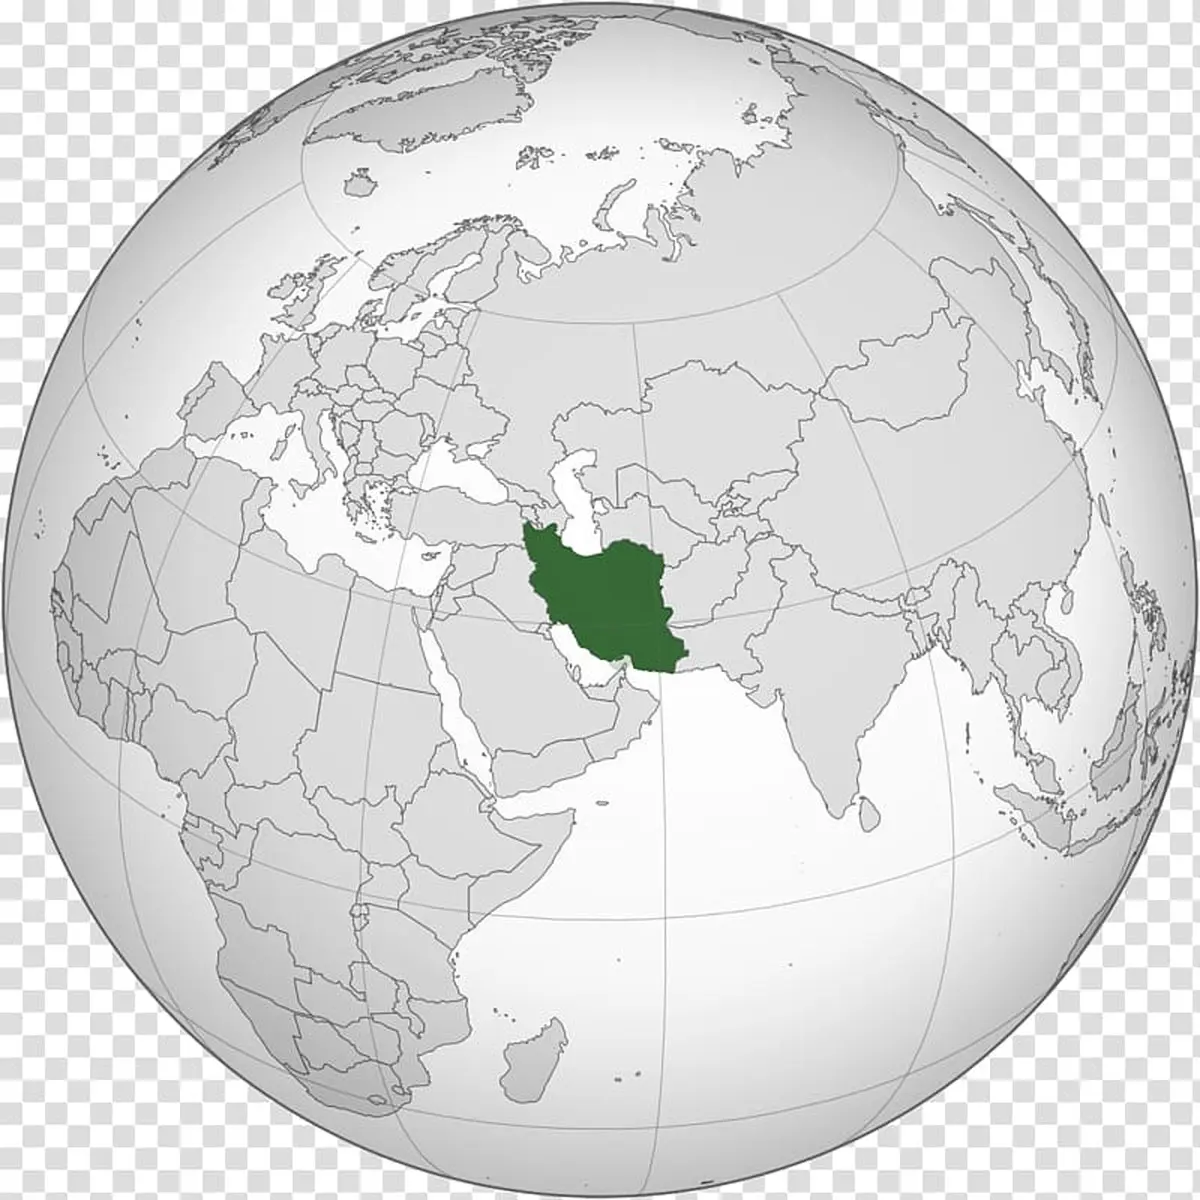 دنیا و ایران چقدر متفاوت حرکت می کنند؟